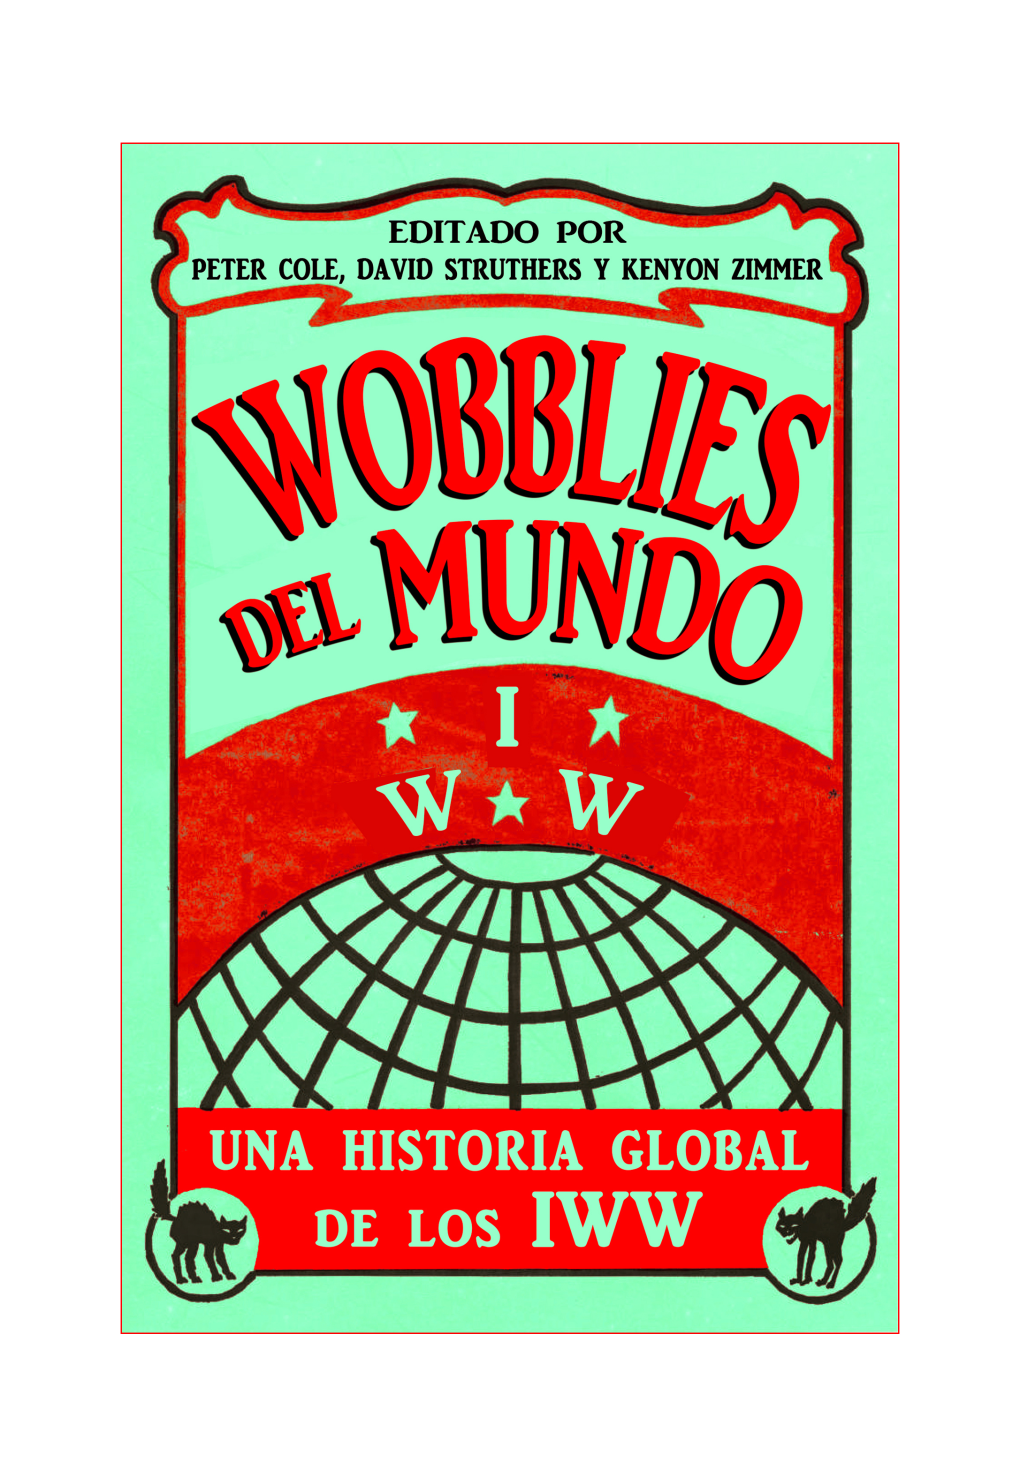 Wobblies Del Mundo